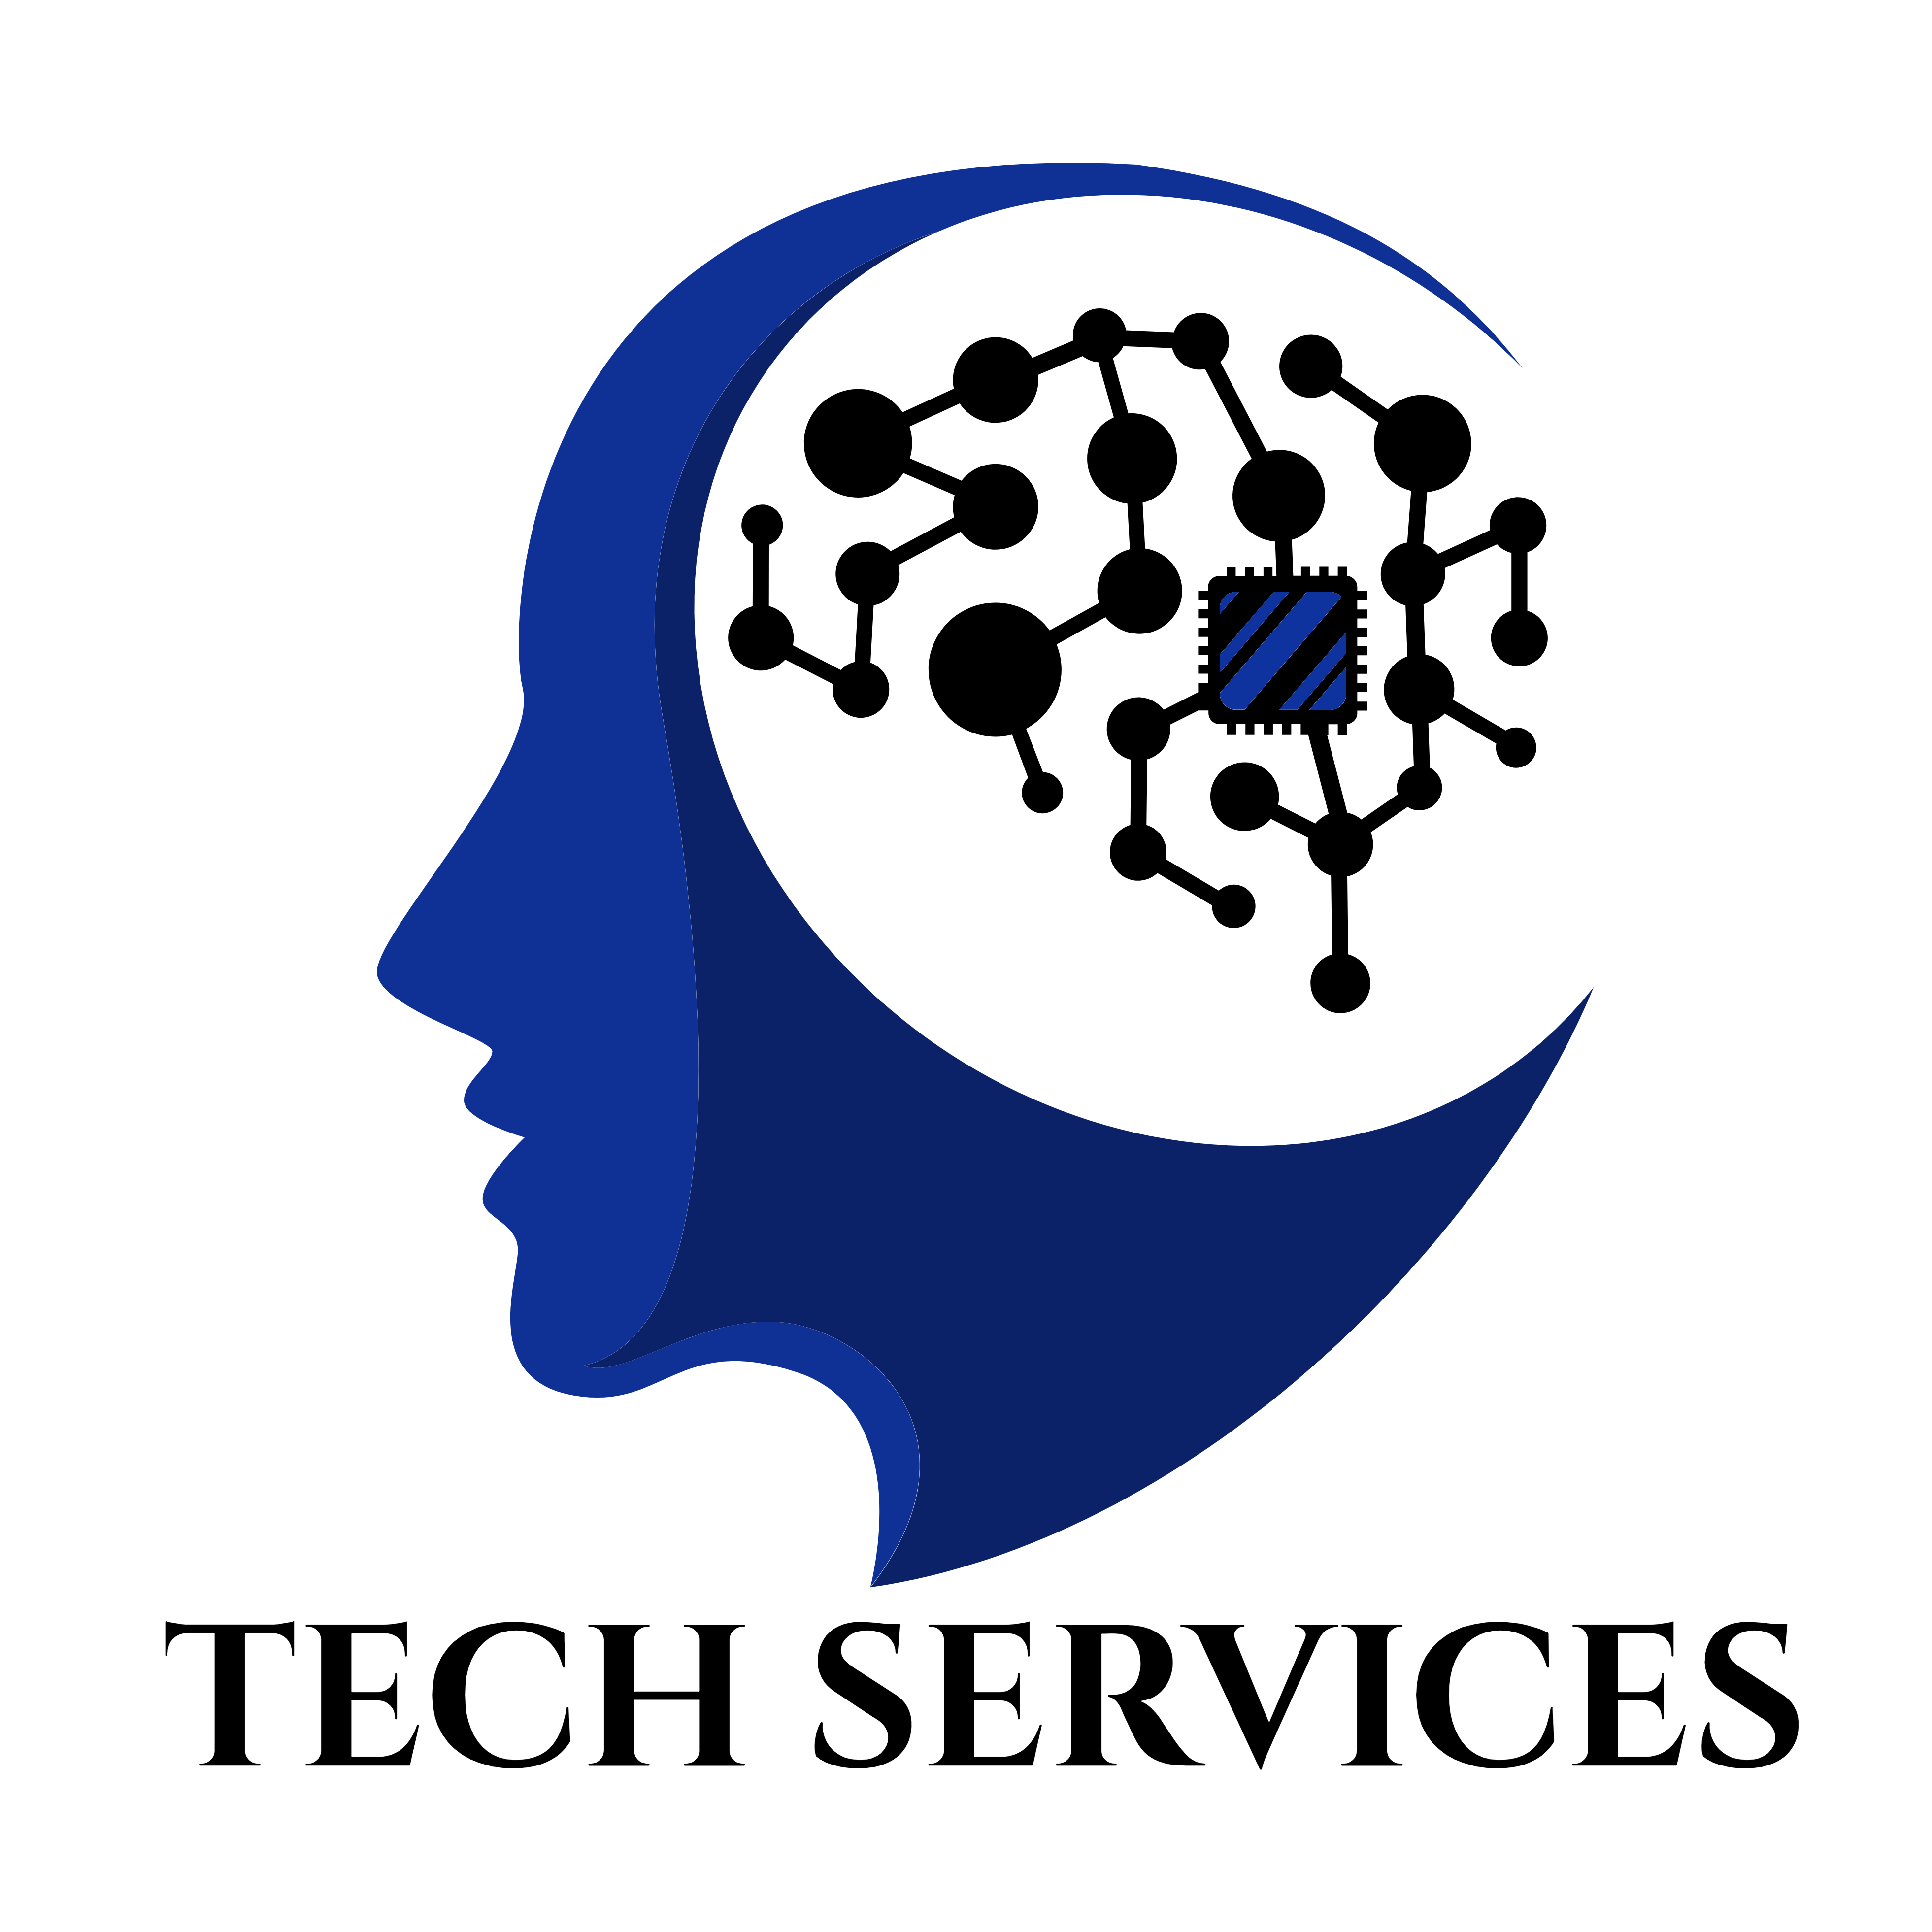 Tech Services